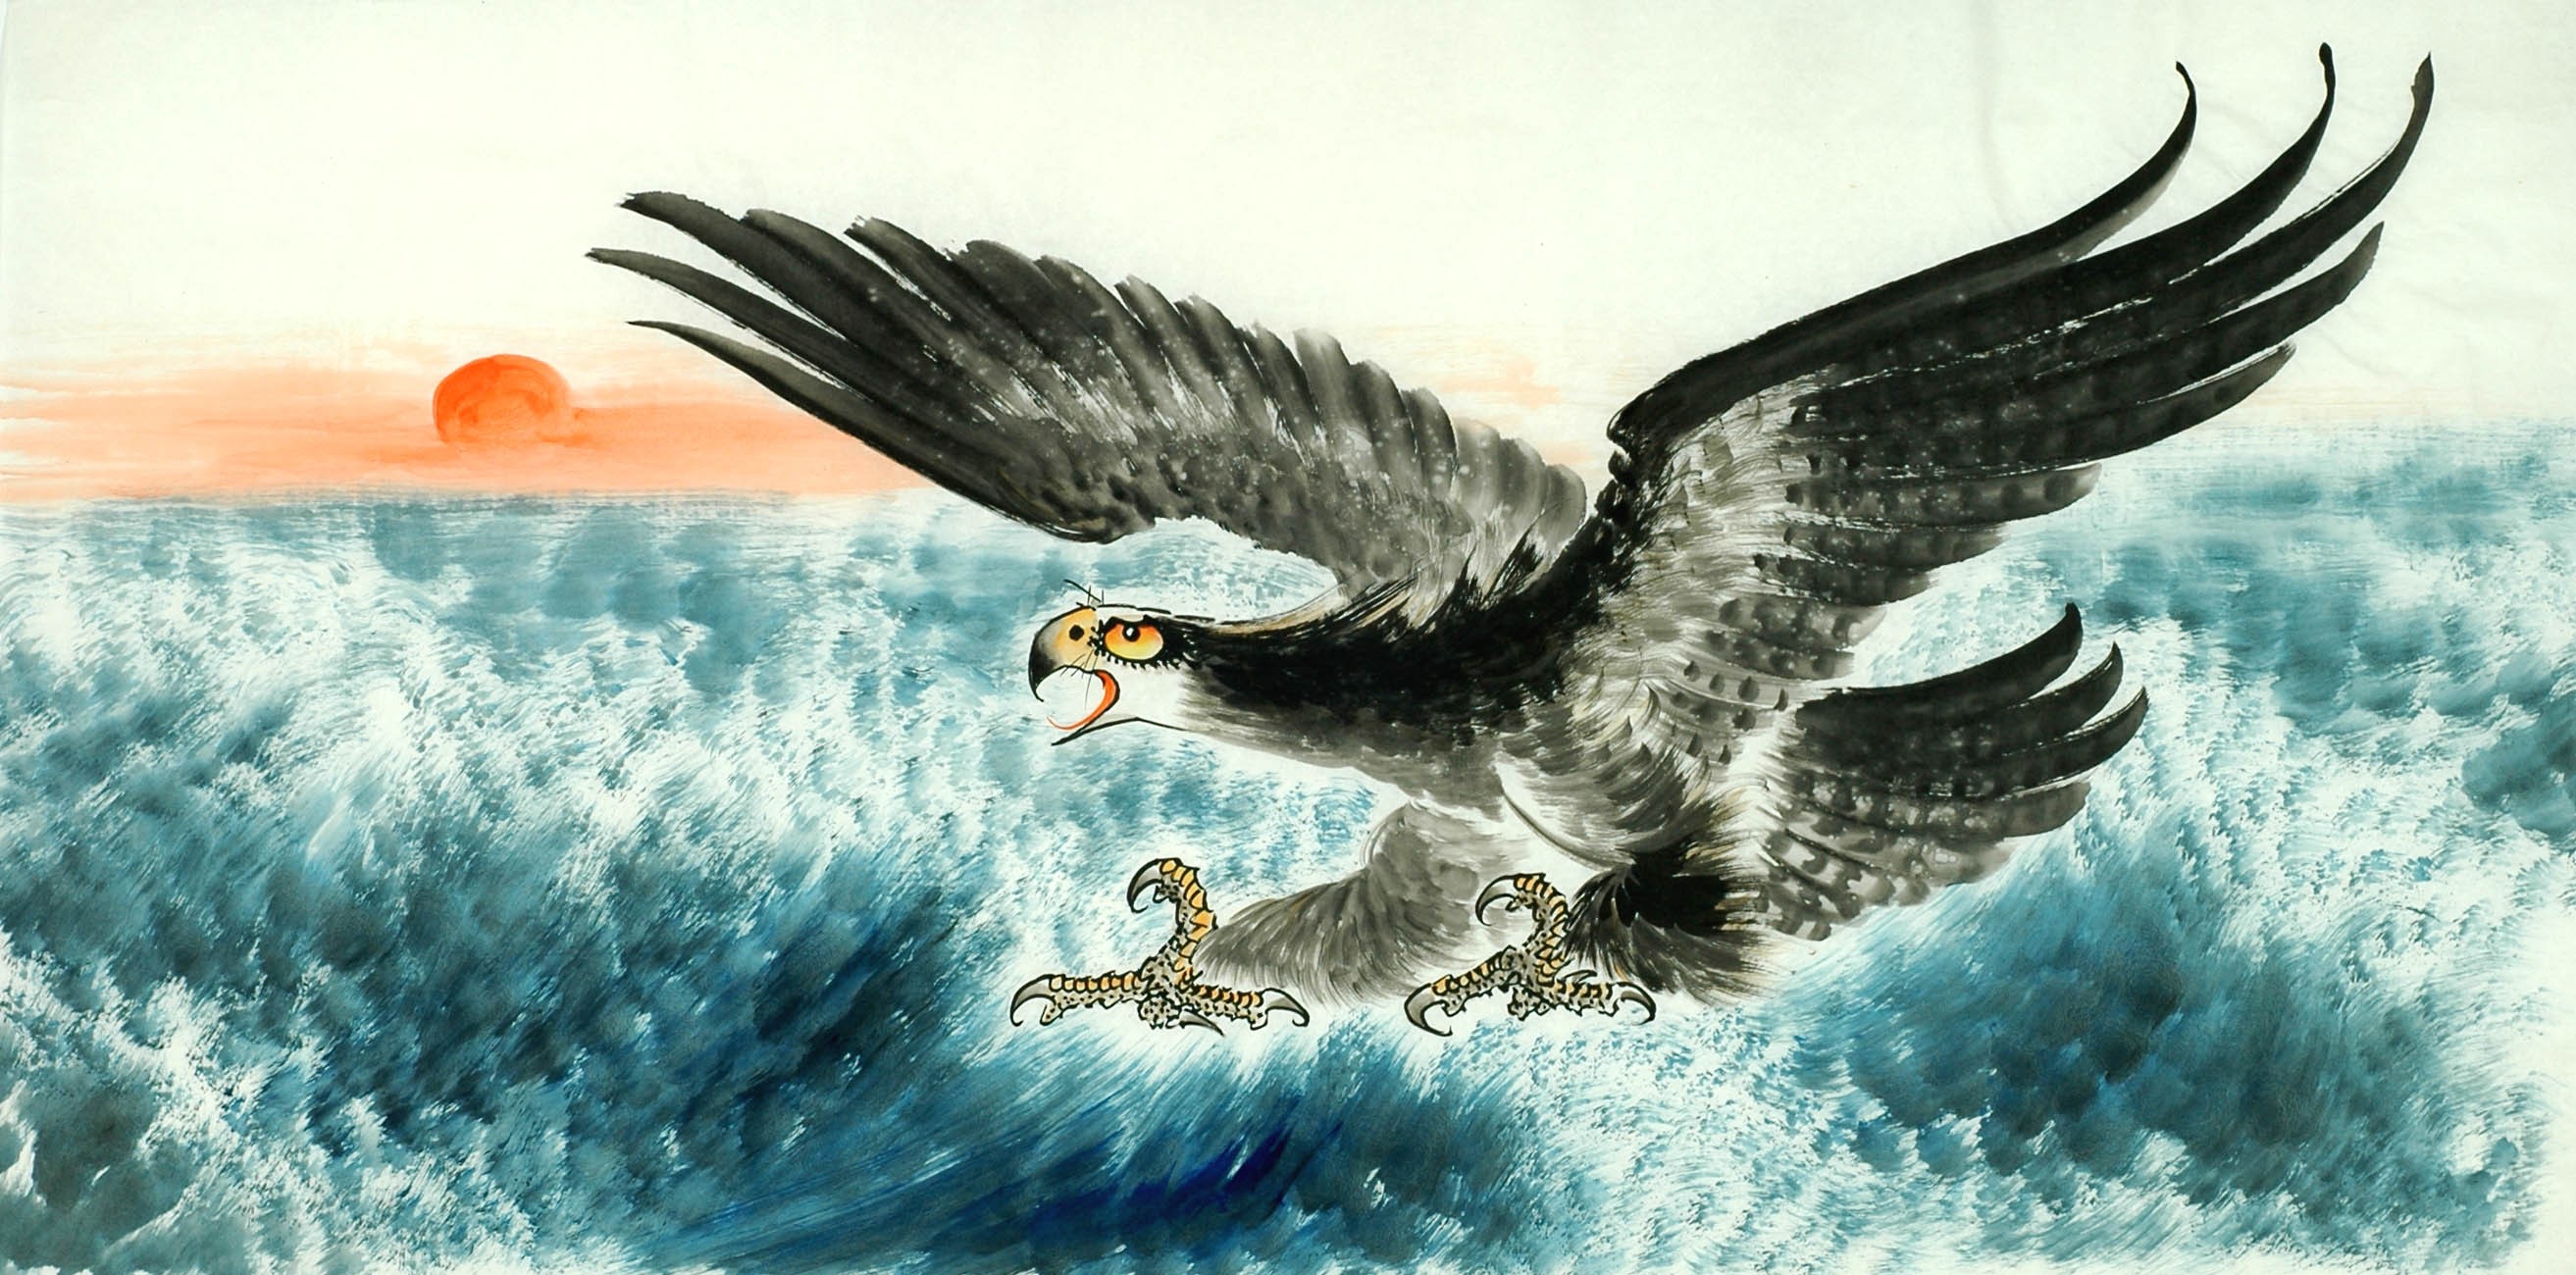 Chinese Eagle Painting - CNAG011349